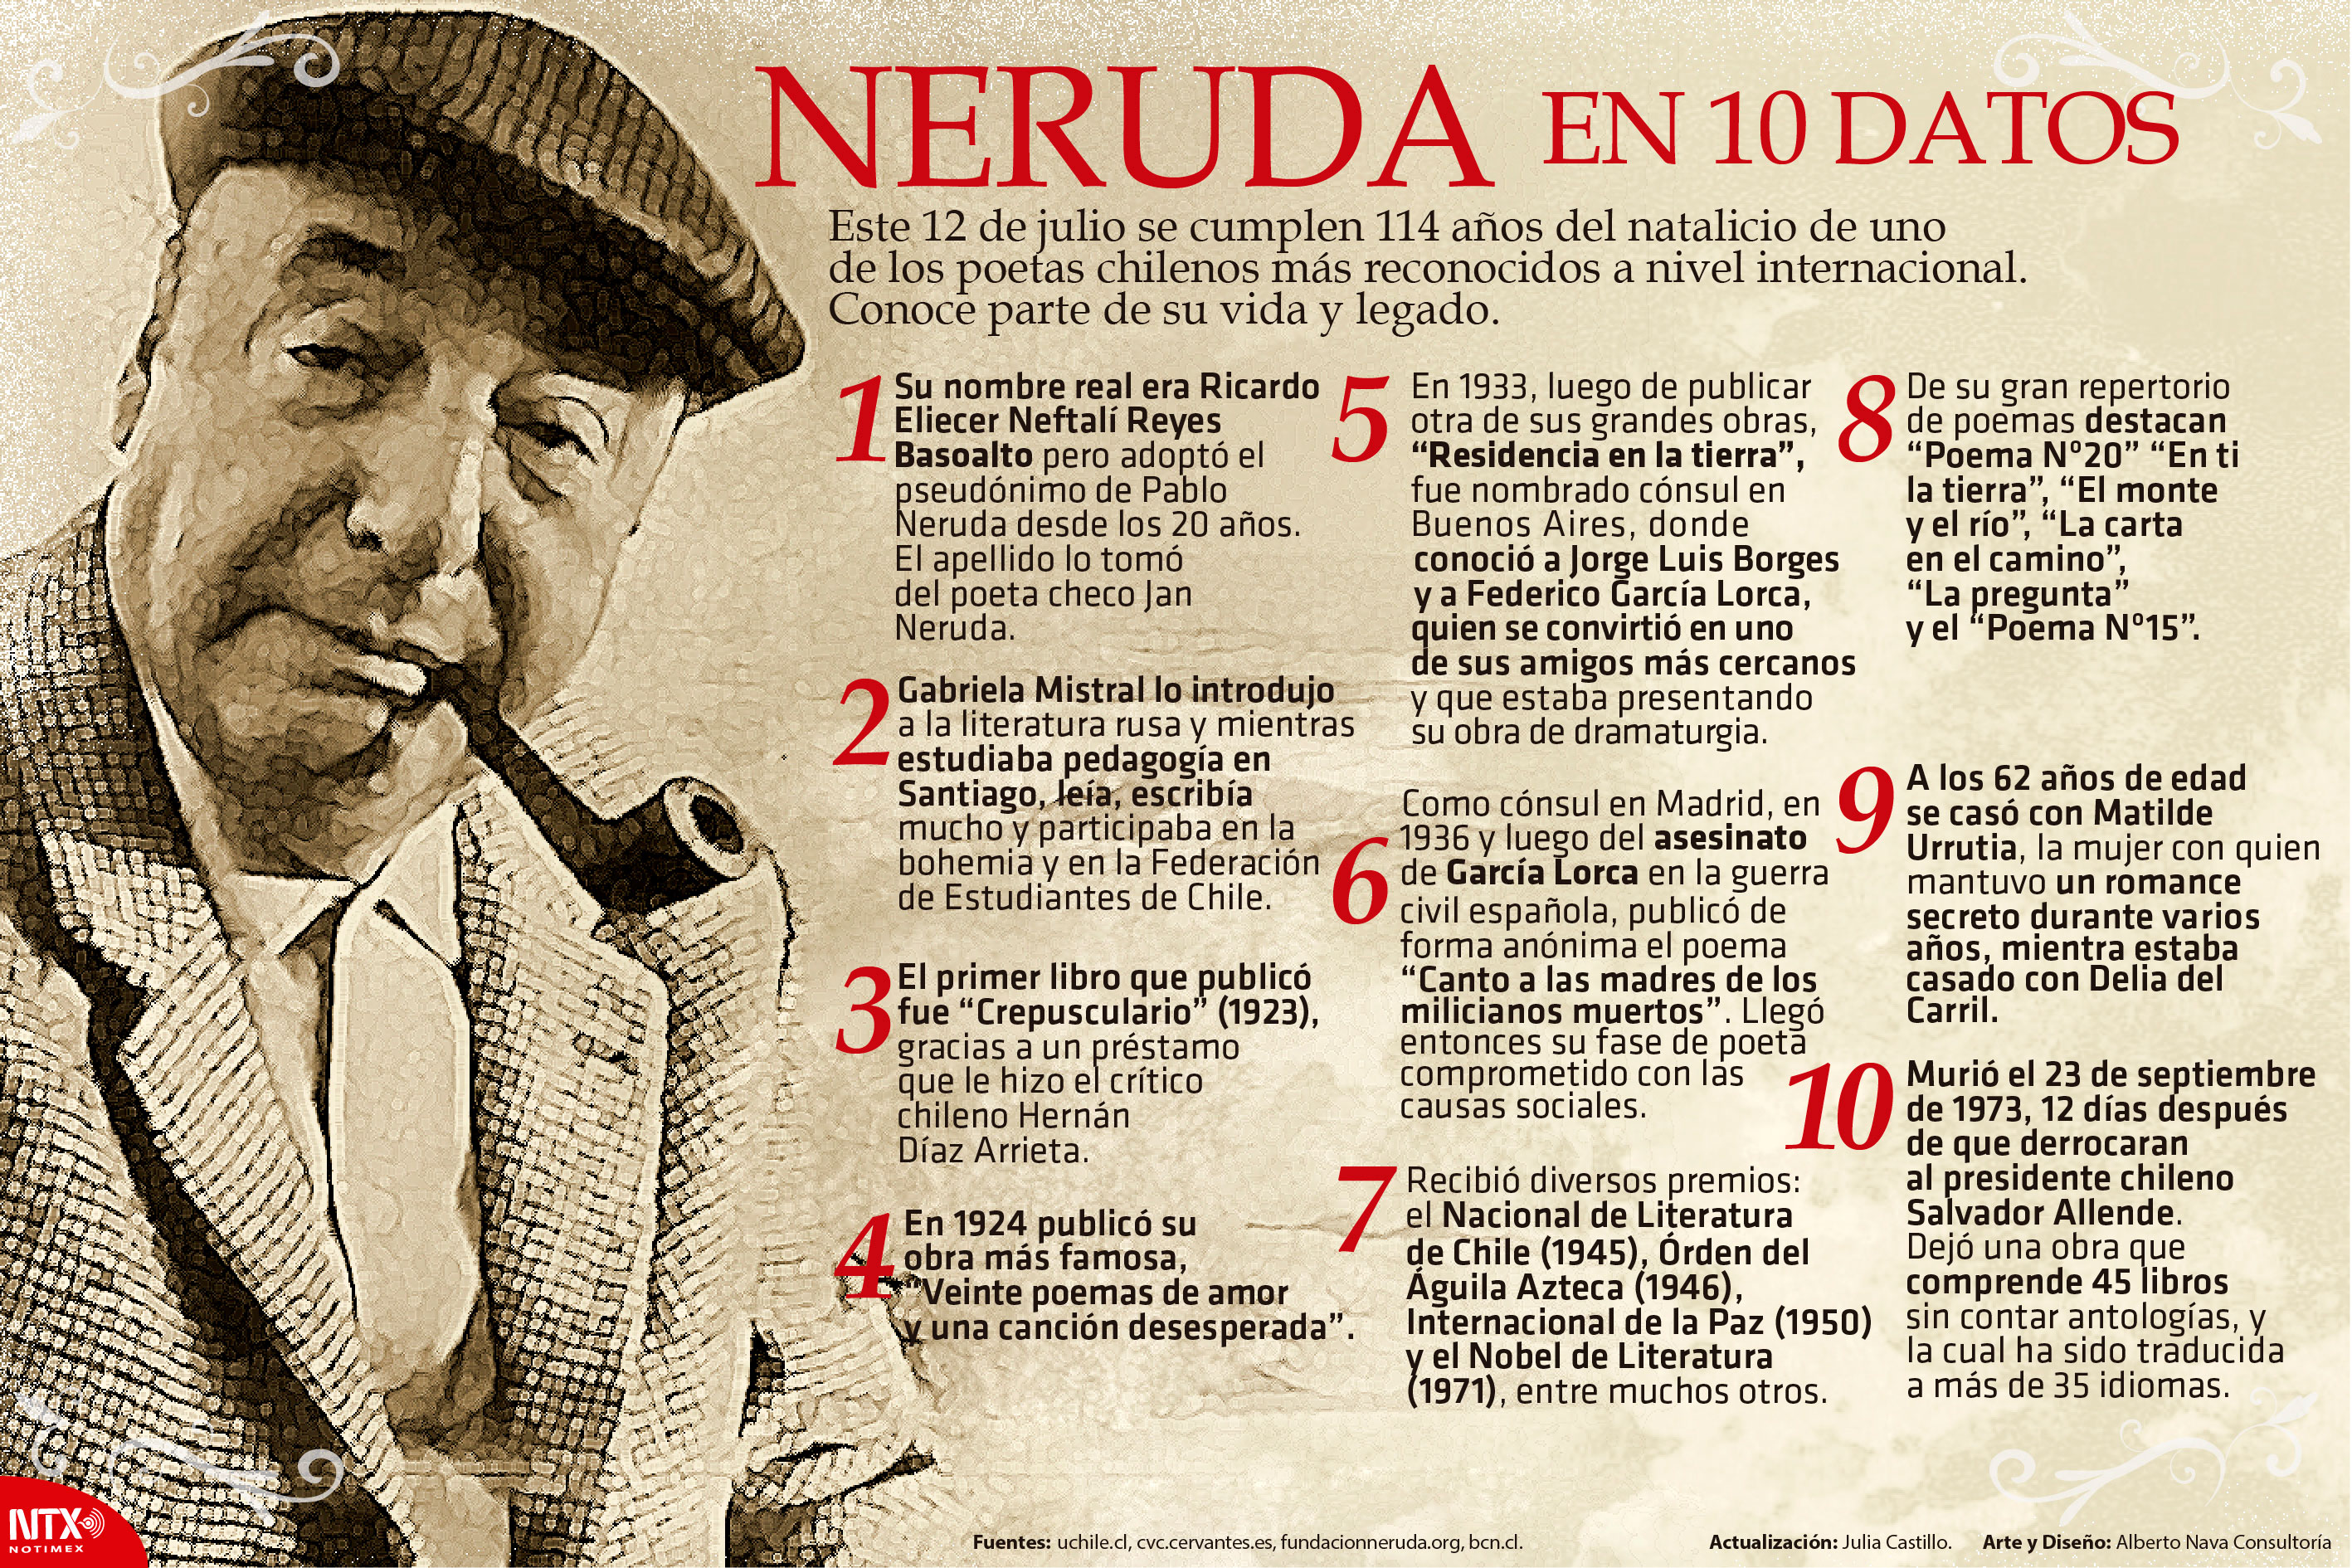 Neruda en 10 datos